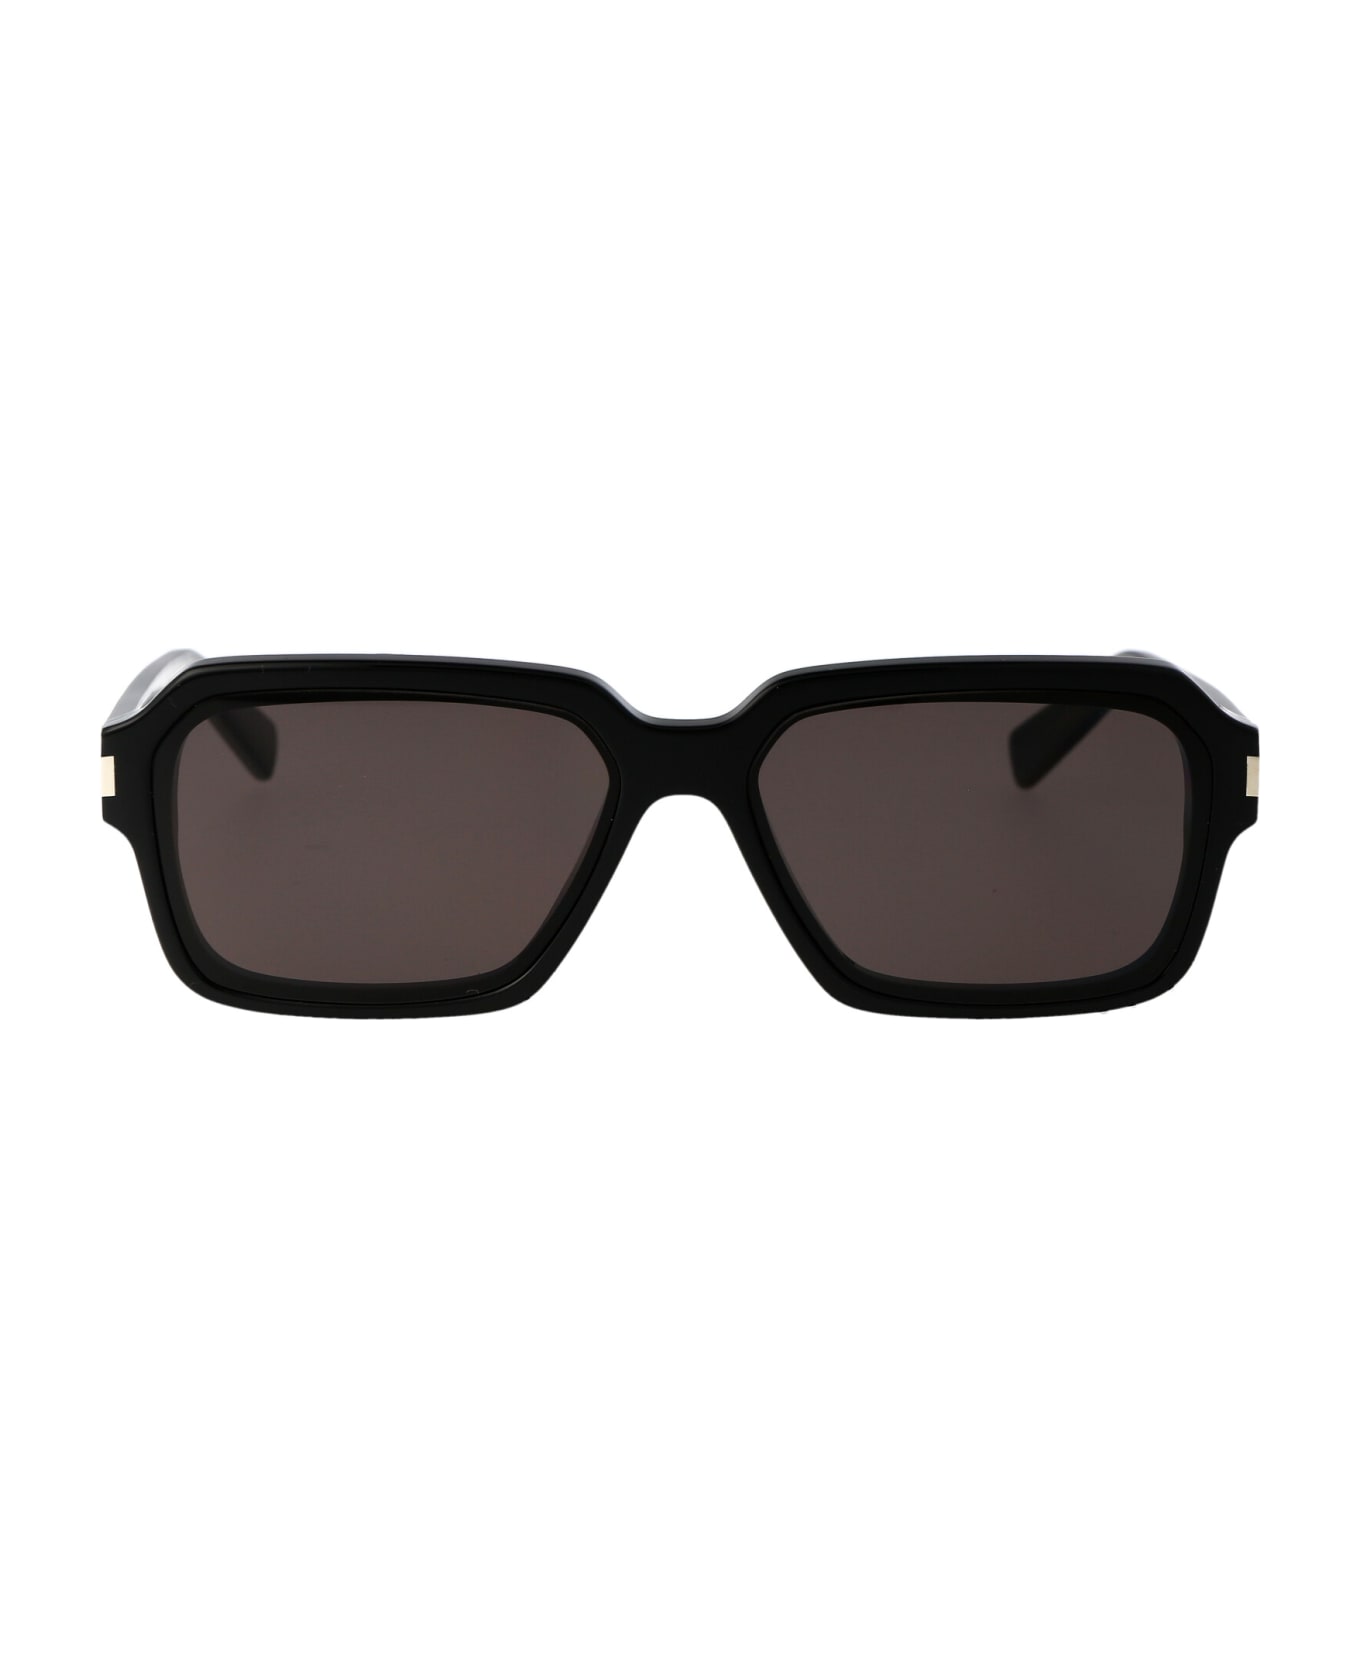 Saint Laurent Eyewear Sl 611 Sunglasses - 001 BLACK BLACK BLACK